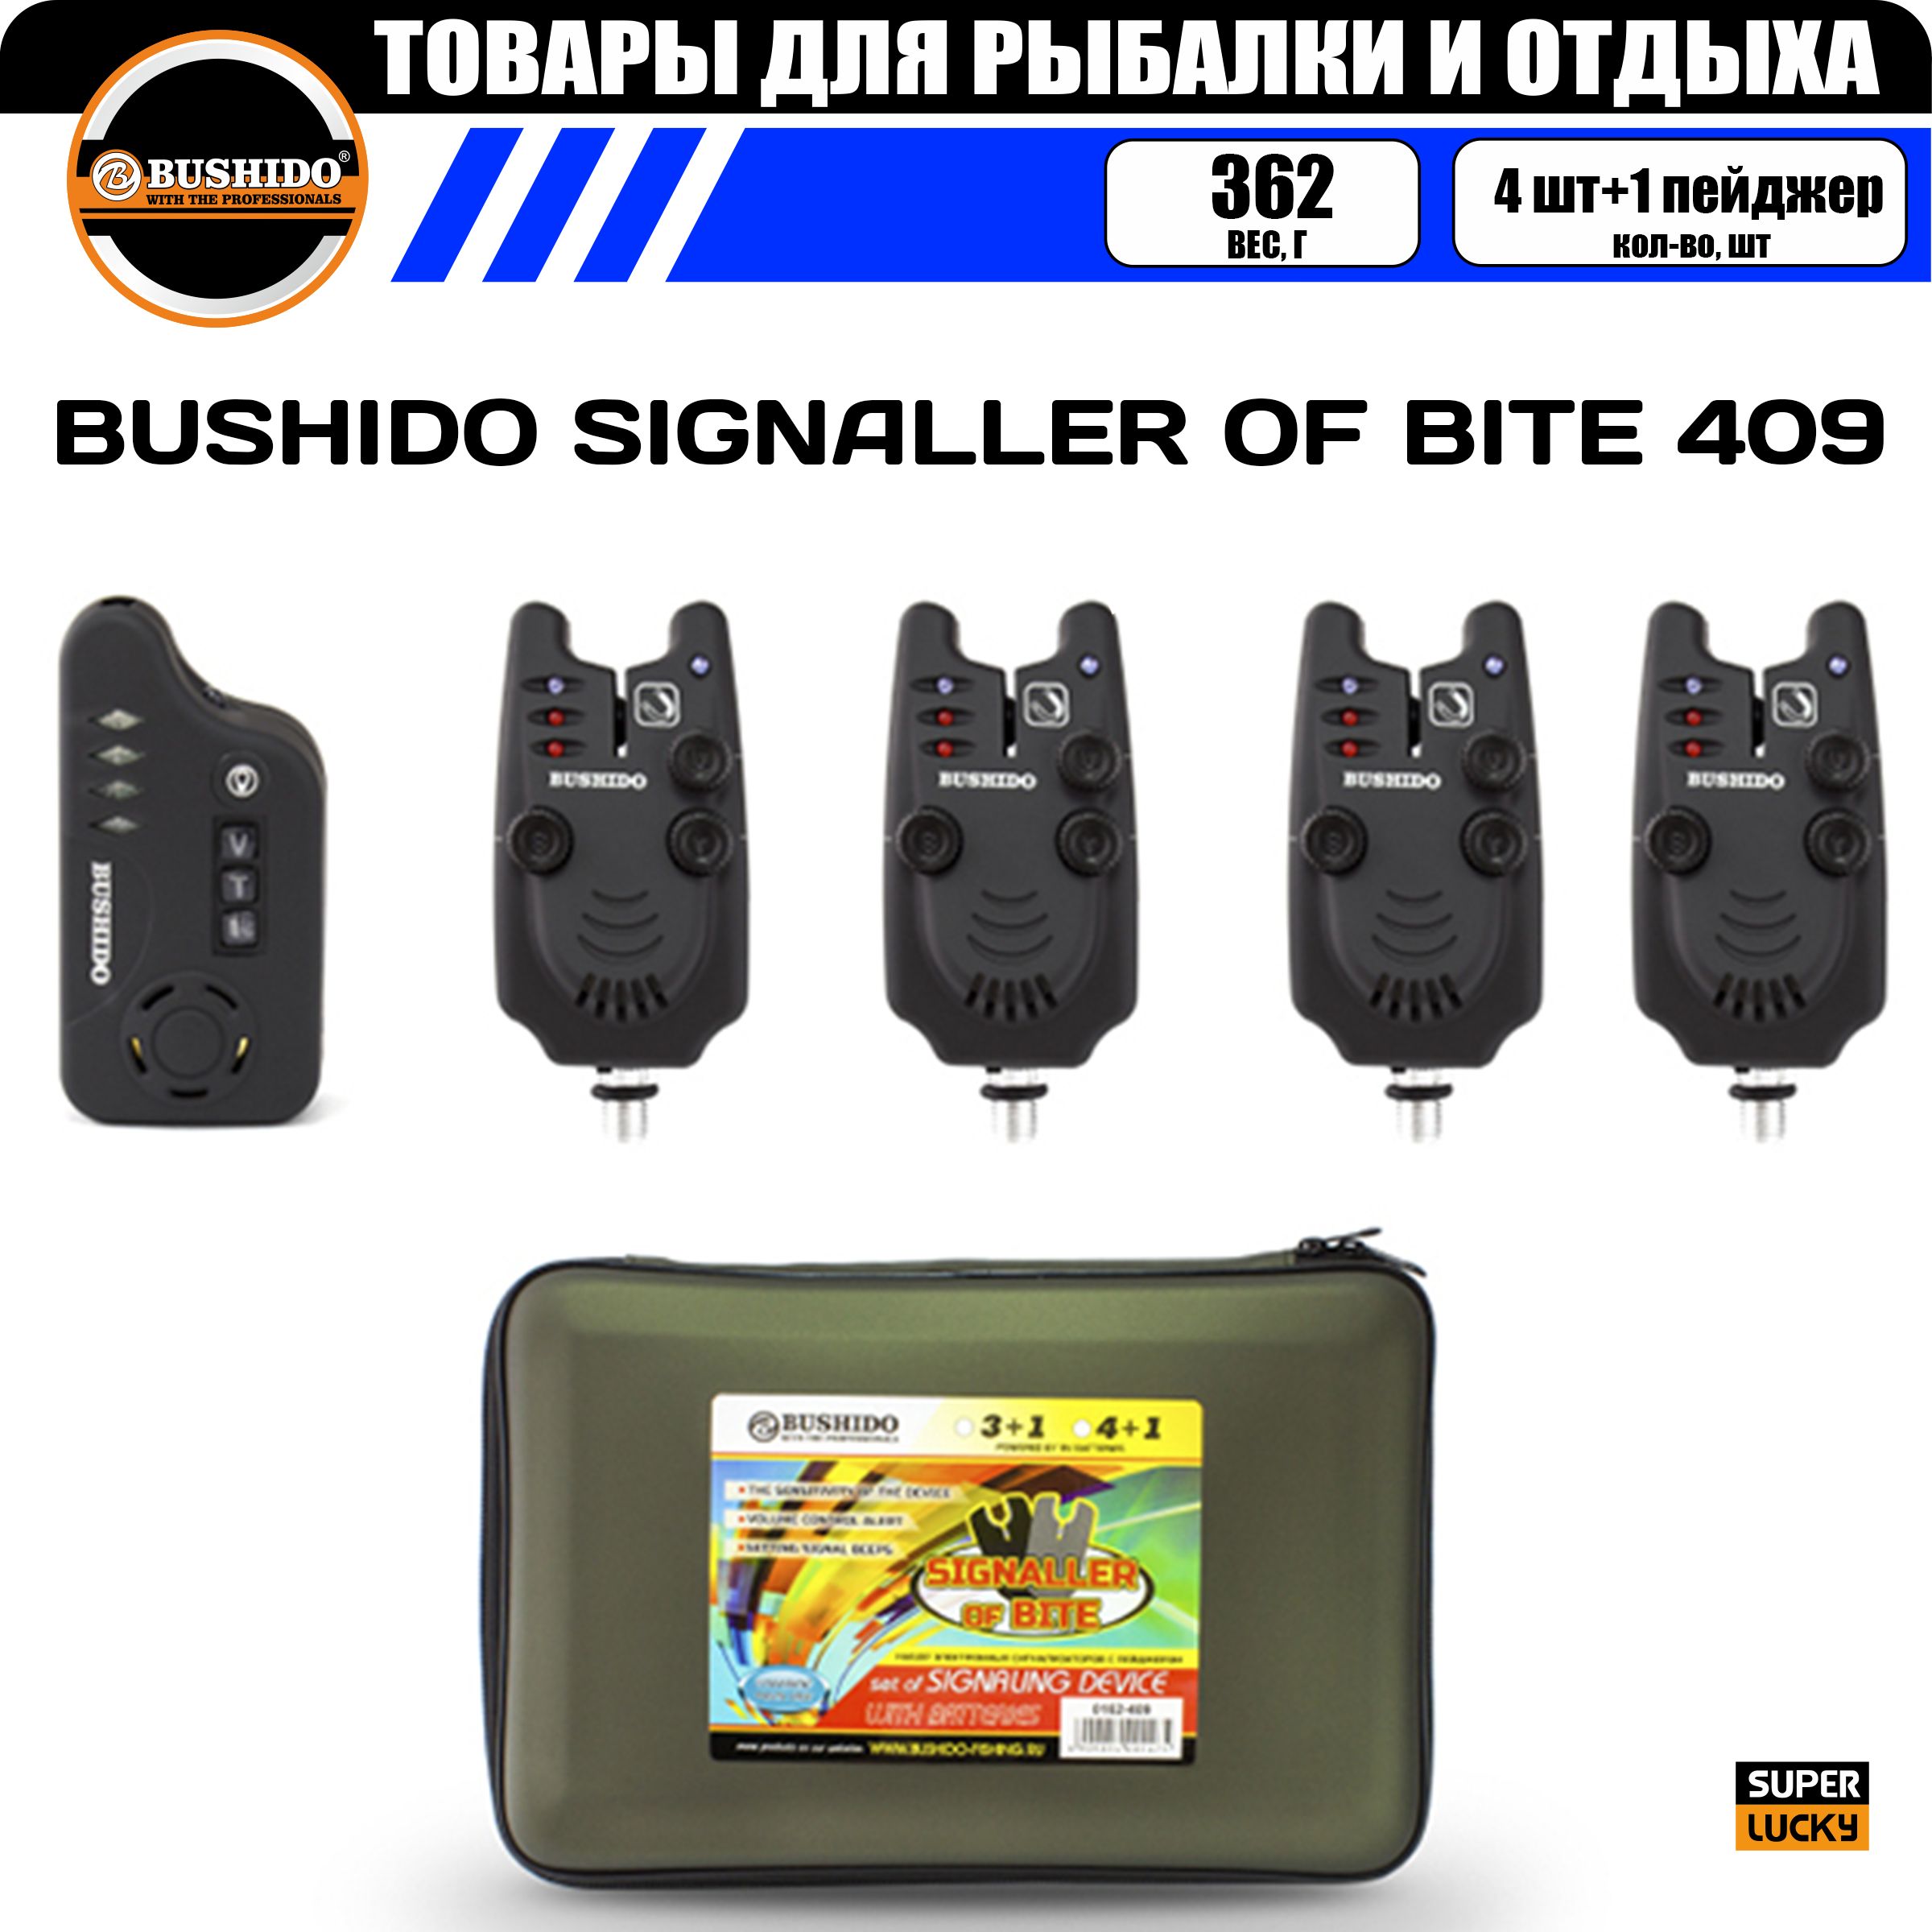 Набор сигнализаторов поклёвки BUSHIDO SIGNALLER OF BITE 409 (4шт+1пейджер), для карповой